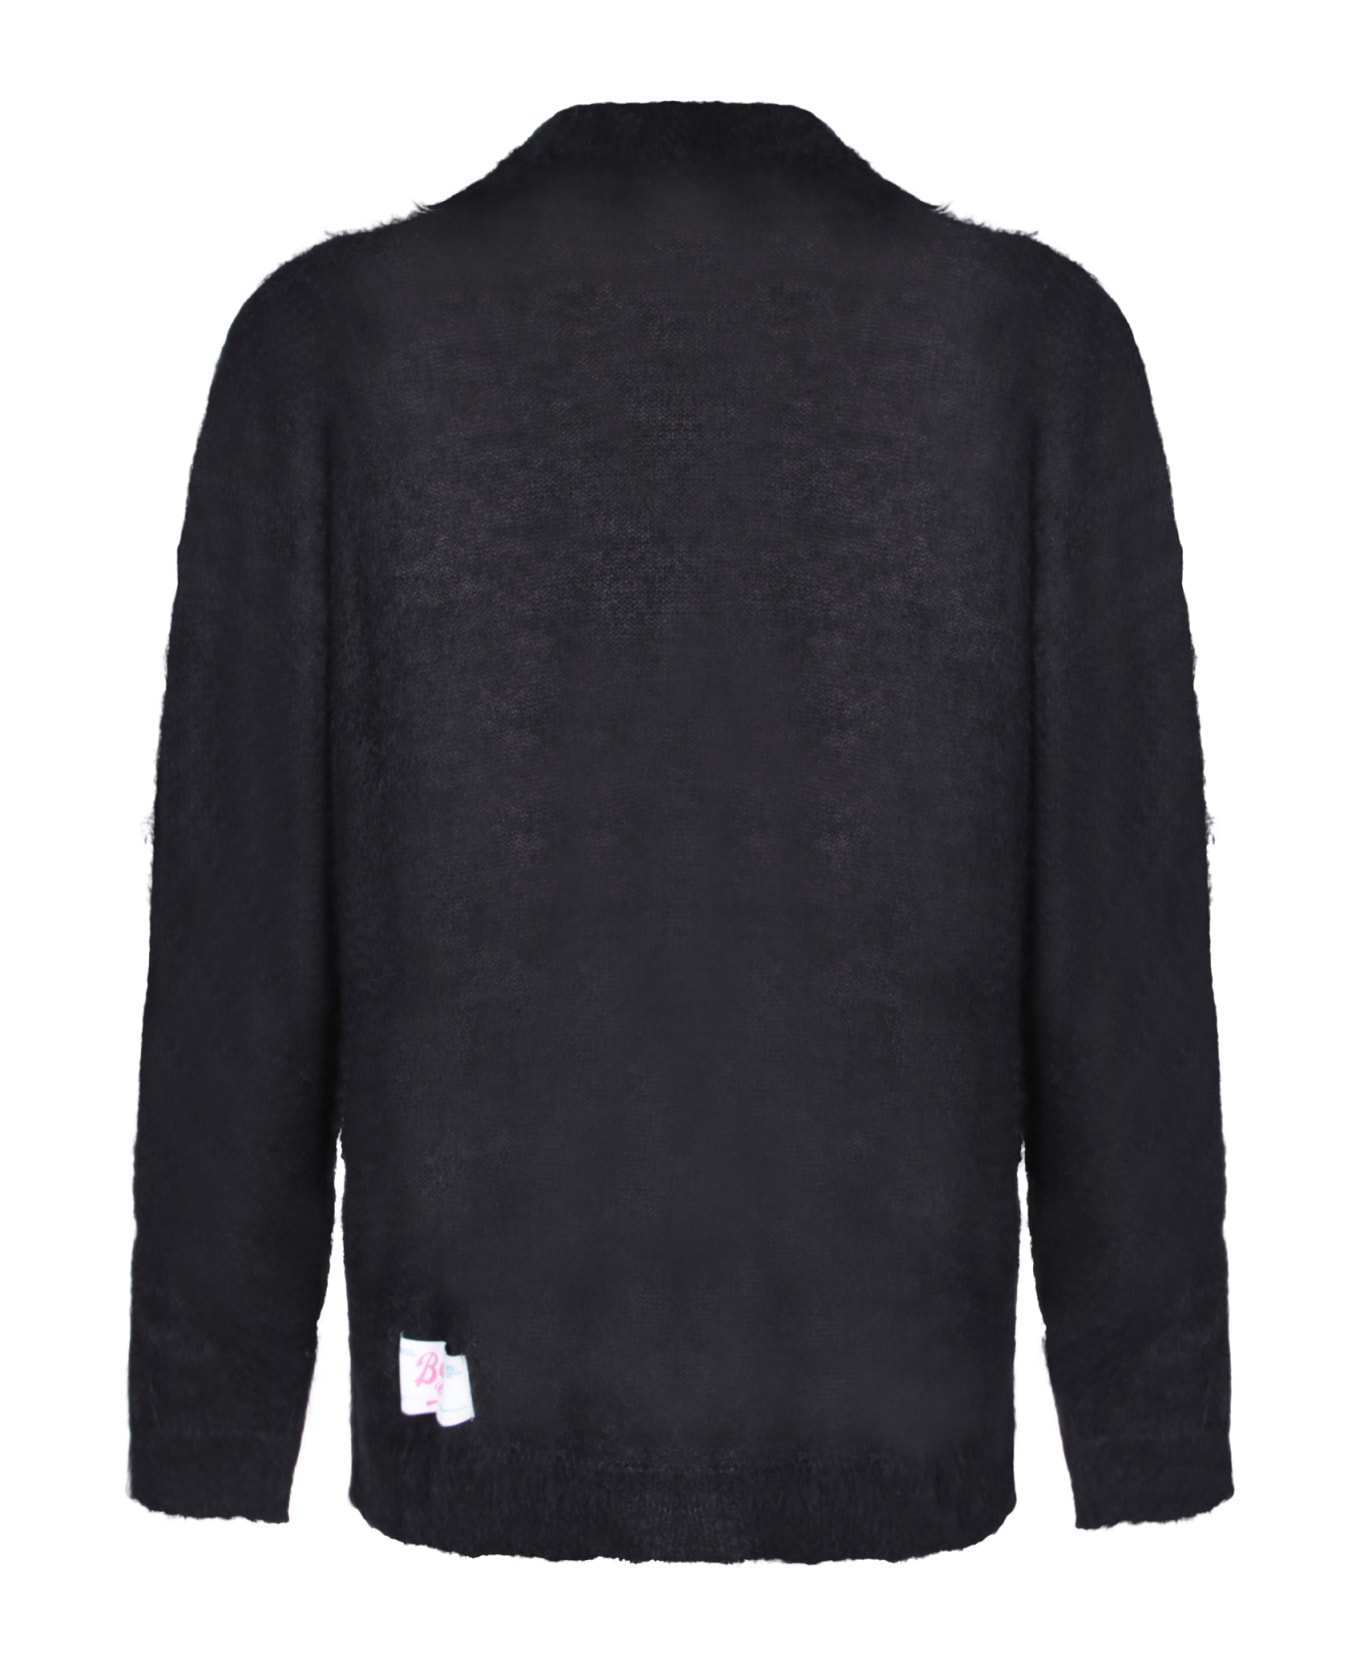 Bonsai Mohair Black Sweater-shirt - Black ニットウェア